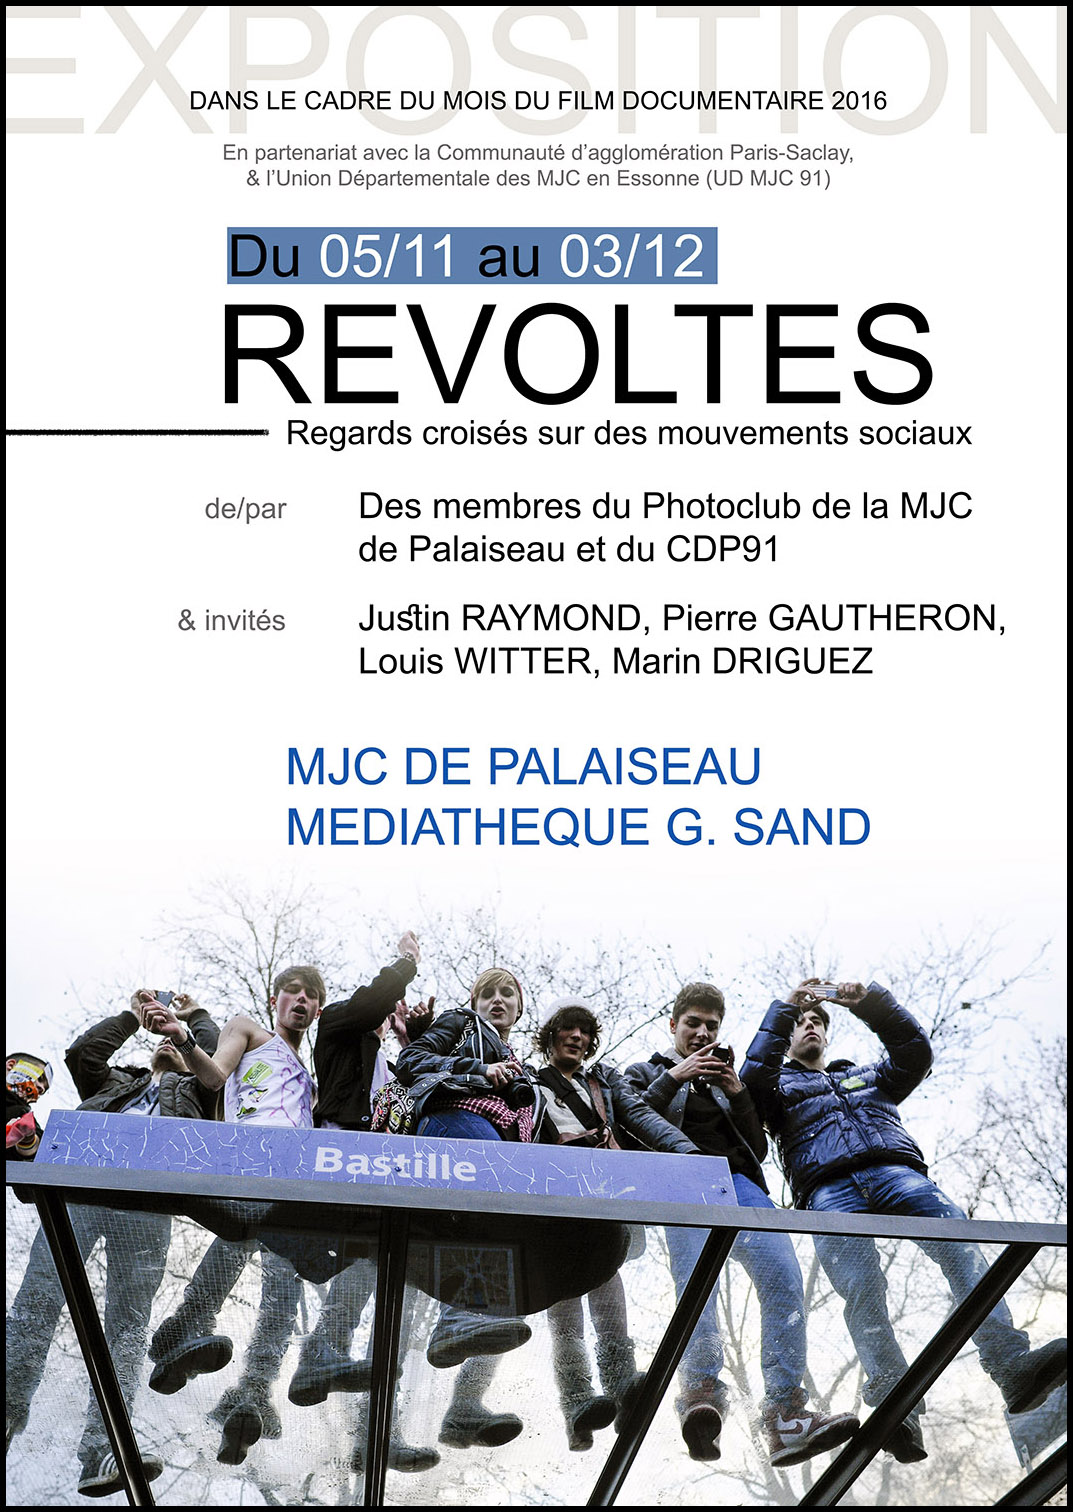 Exposition photo « Révoltes » de la MJC de Palaiseau ; vernissage le 17 novembre 16